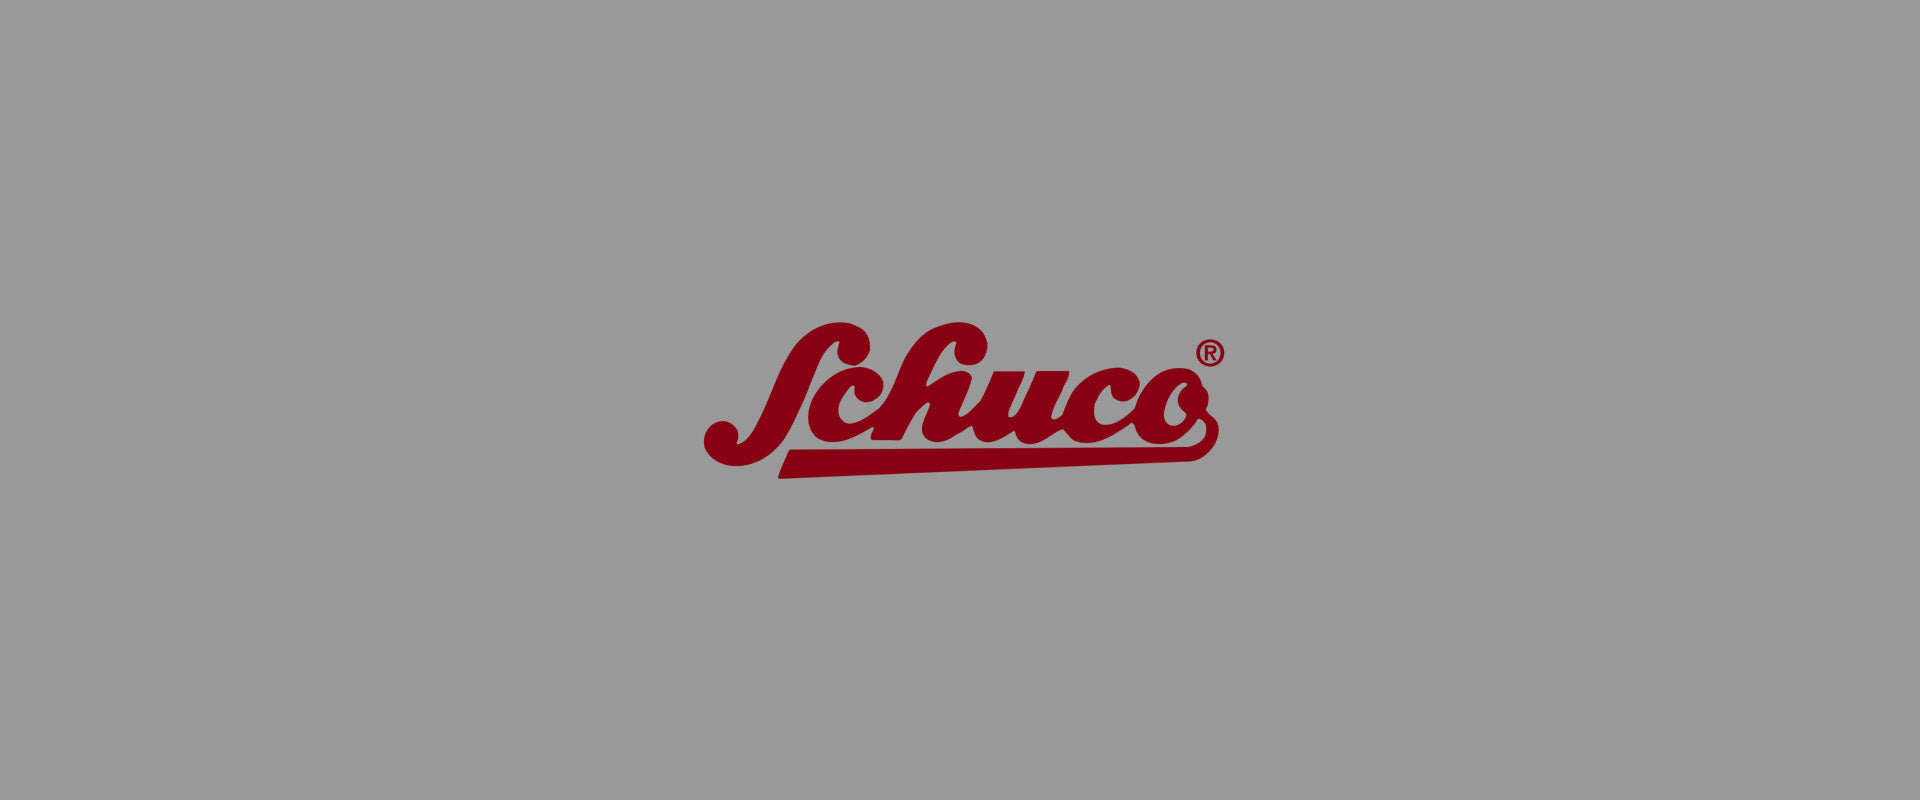 Schuco (シュコー)